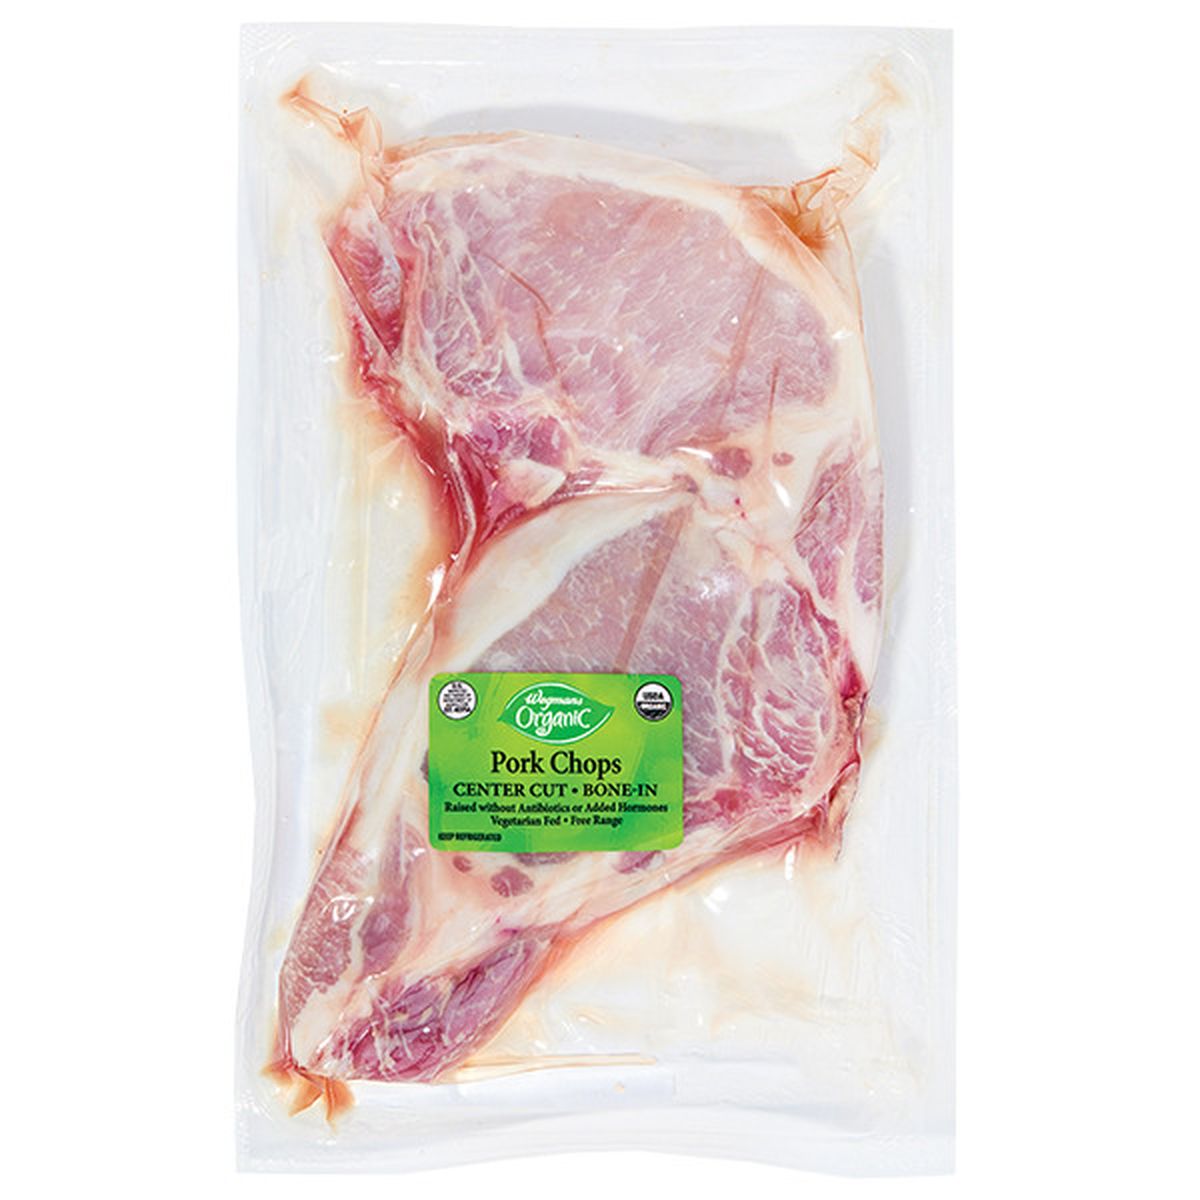 Calories in Wegmans Organic Bone-In Center Cut Pork Chops